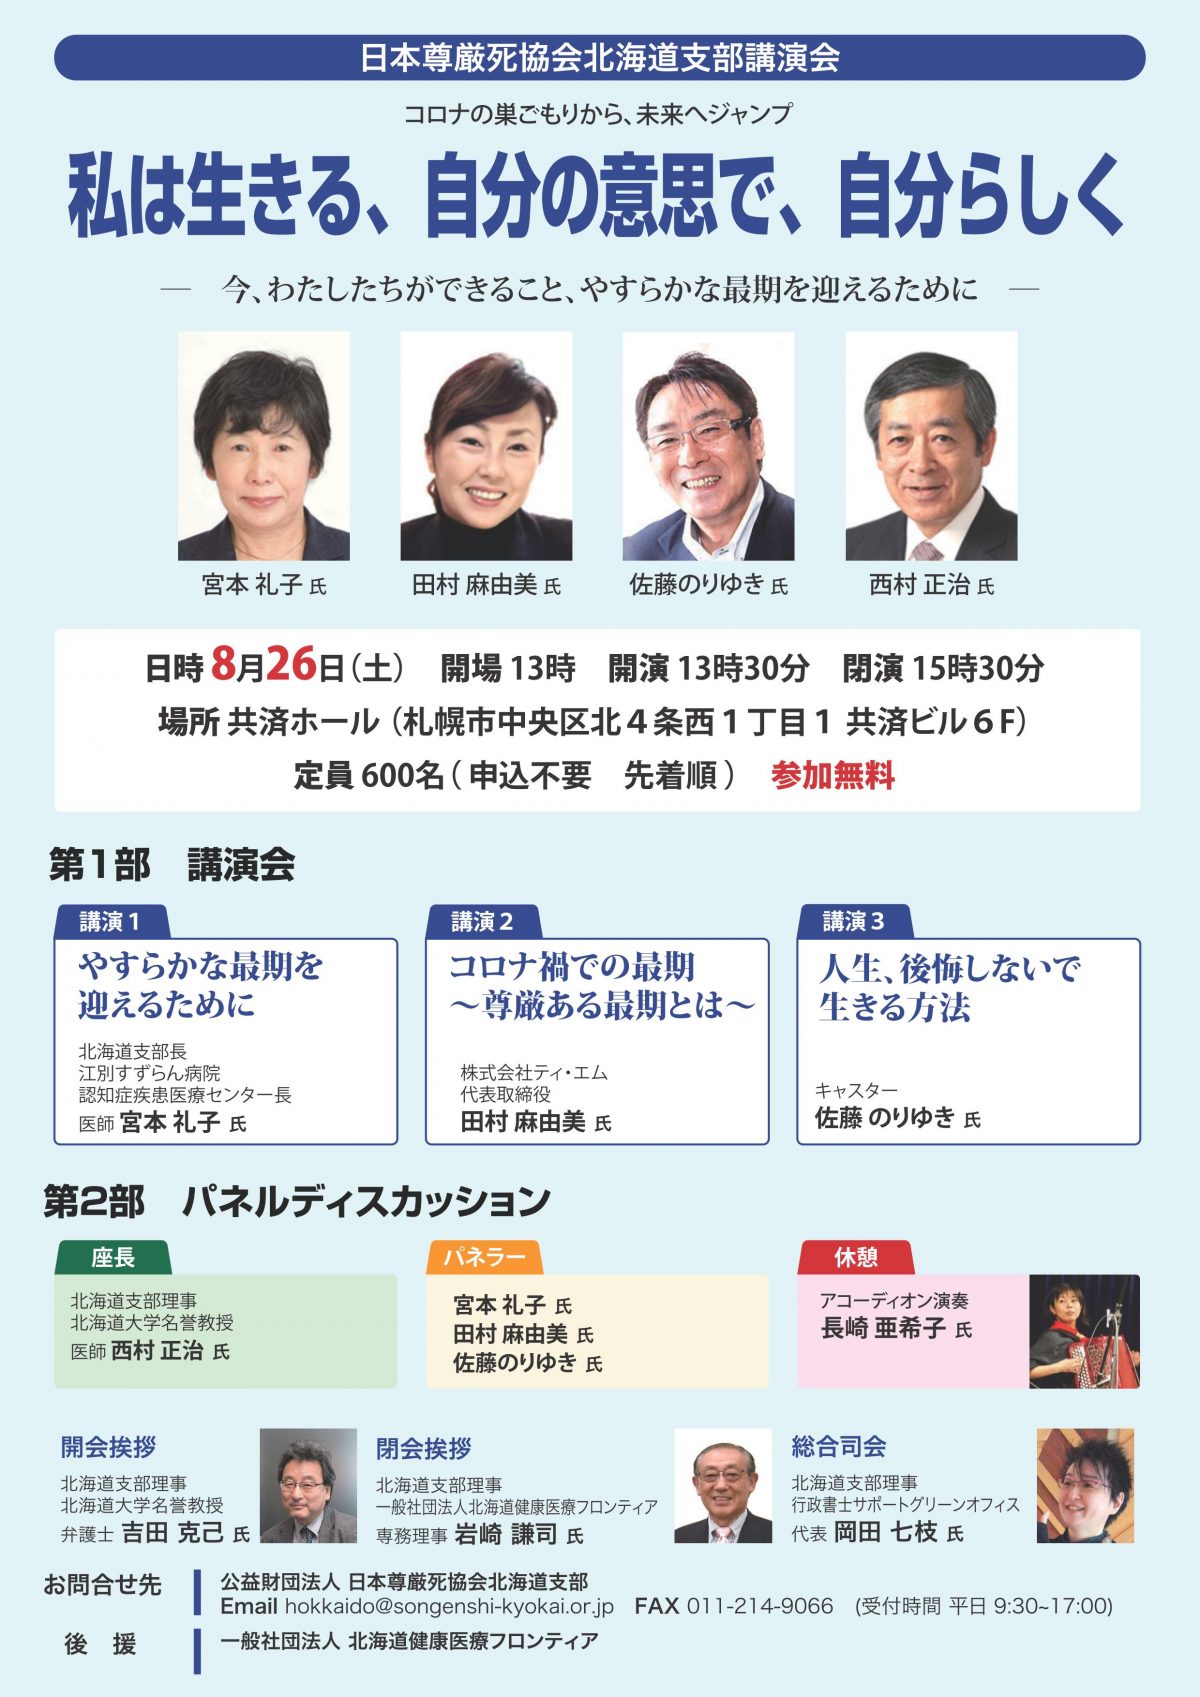 ８月２６日に尊厳死協会の講演会が札幌であります。興味ある方は是非ご参加ください！！